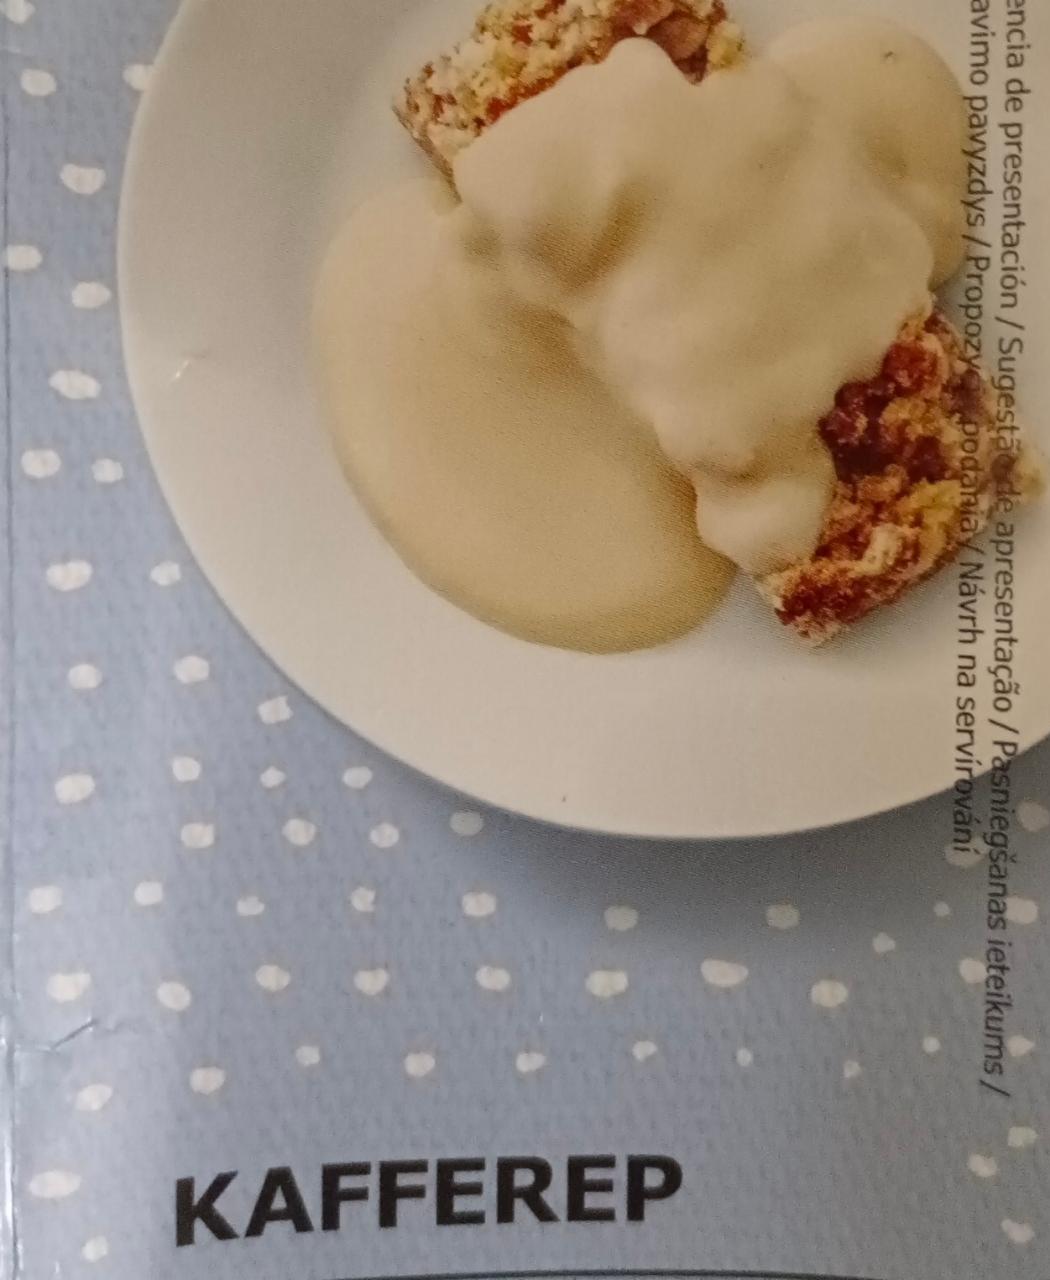 Fotografie - Kafferep dessert sauce with vanilla Ikea